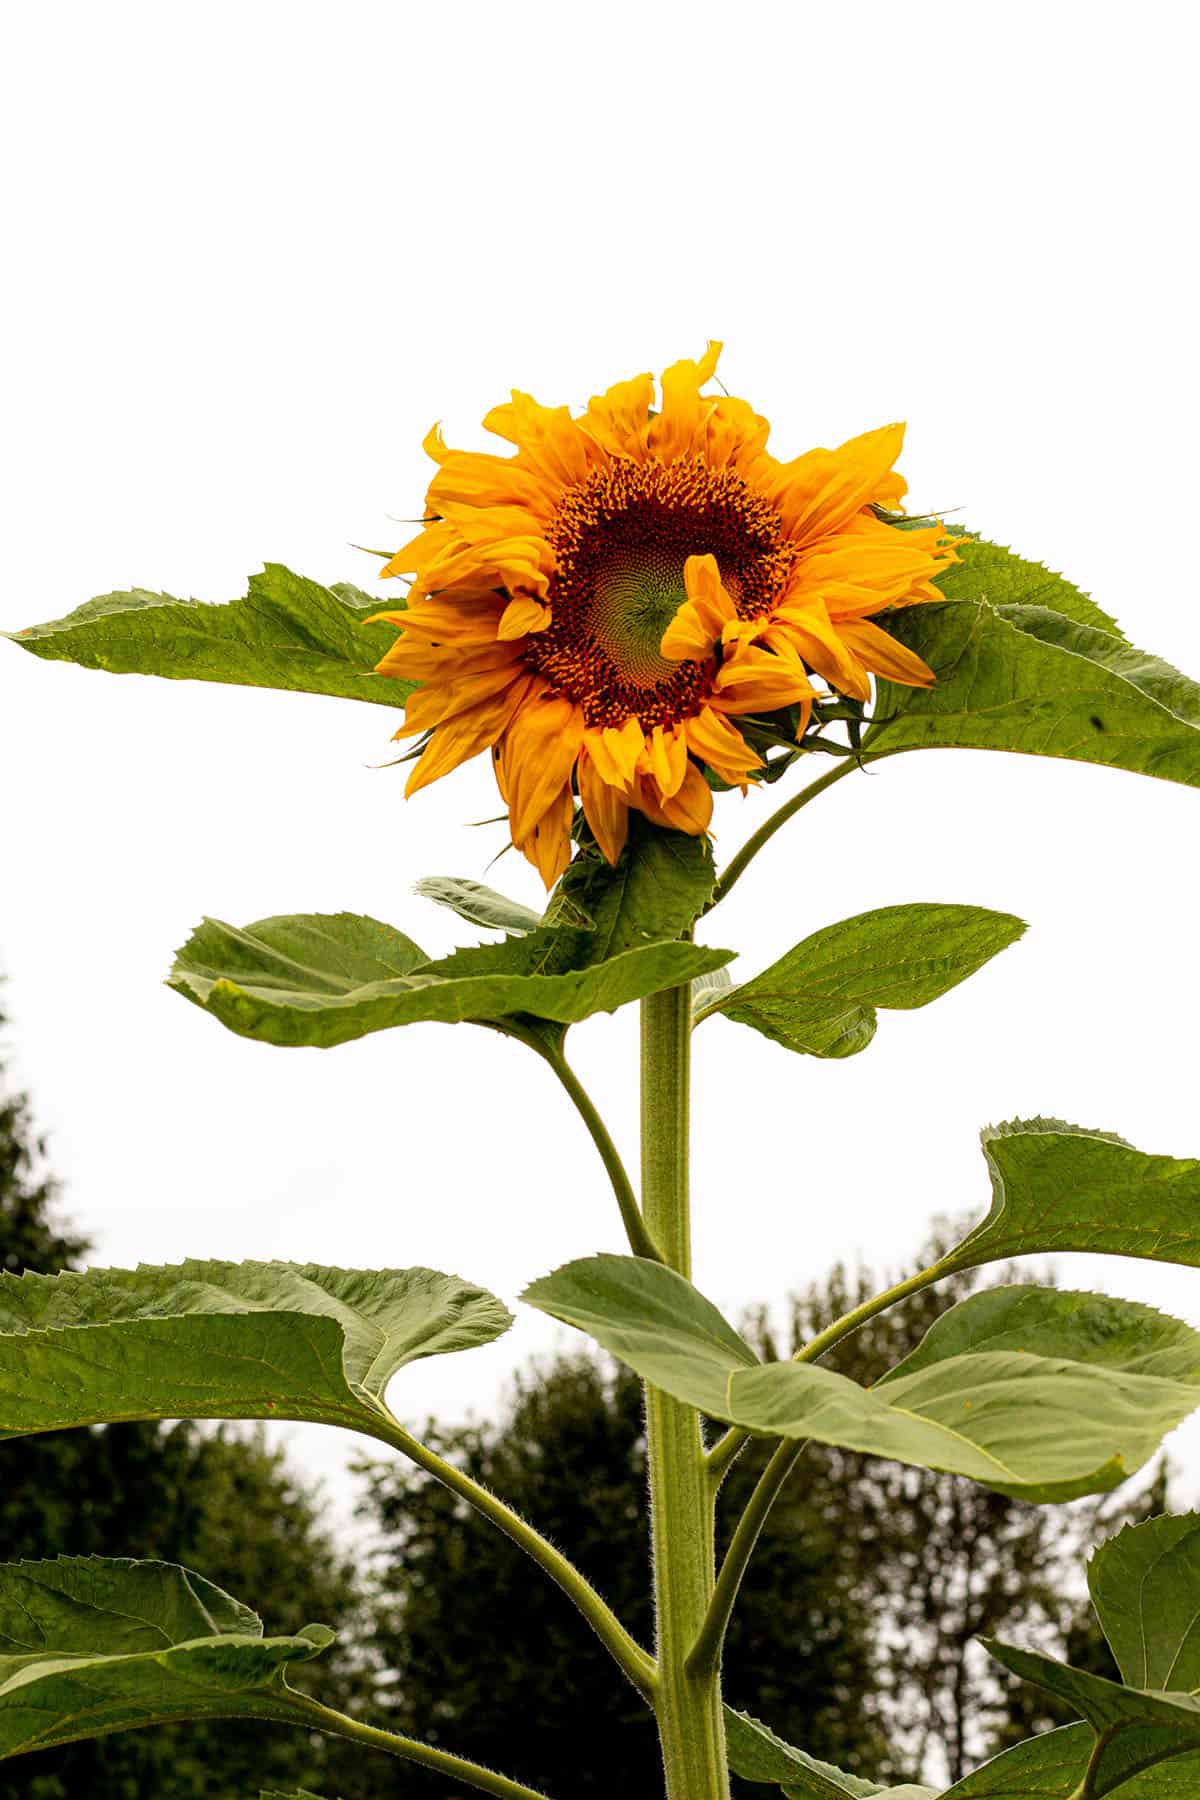 Mammoth Sunflower in my backyard garden.